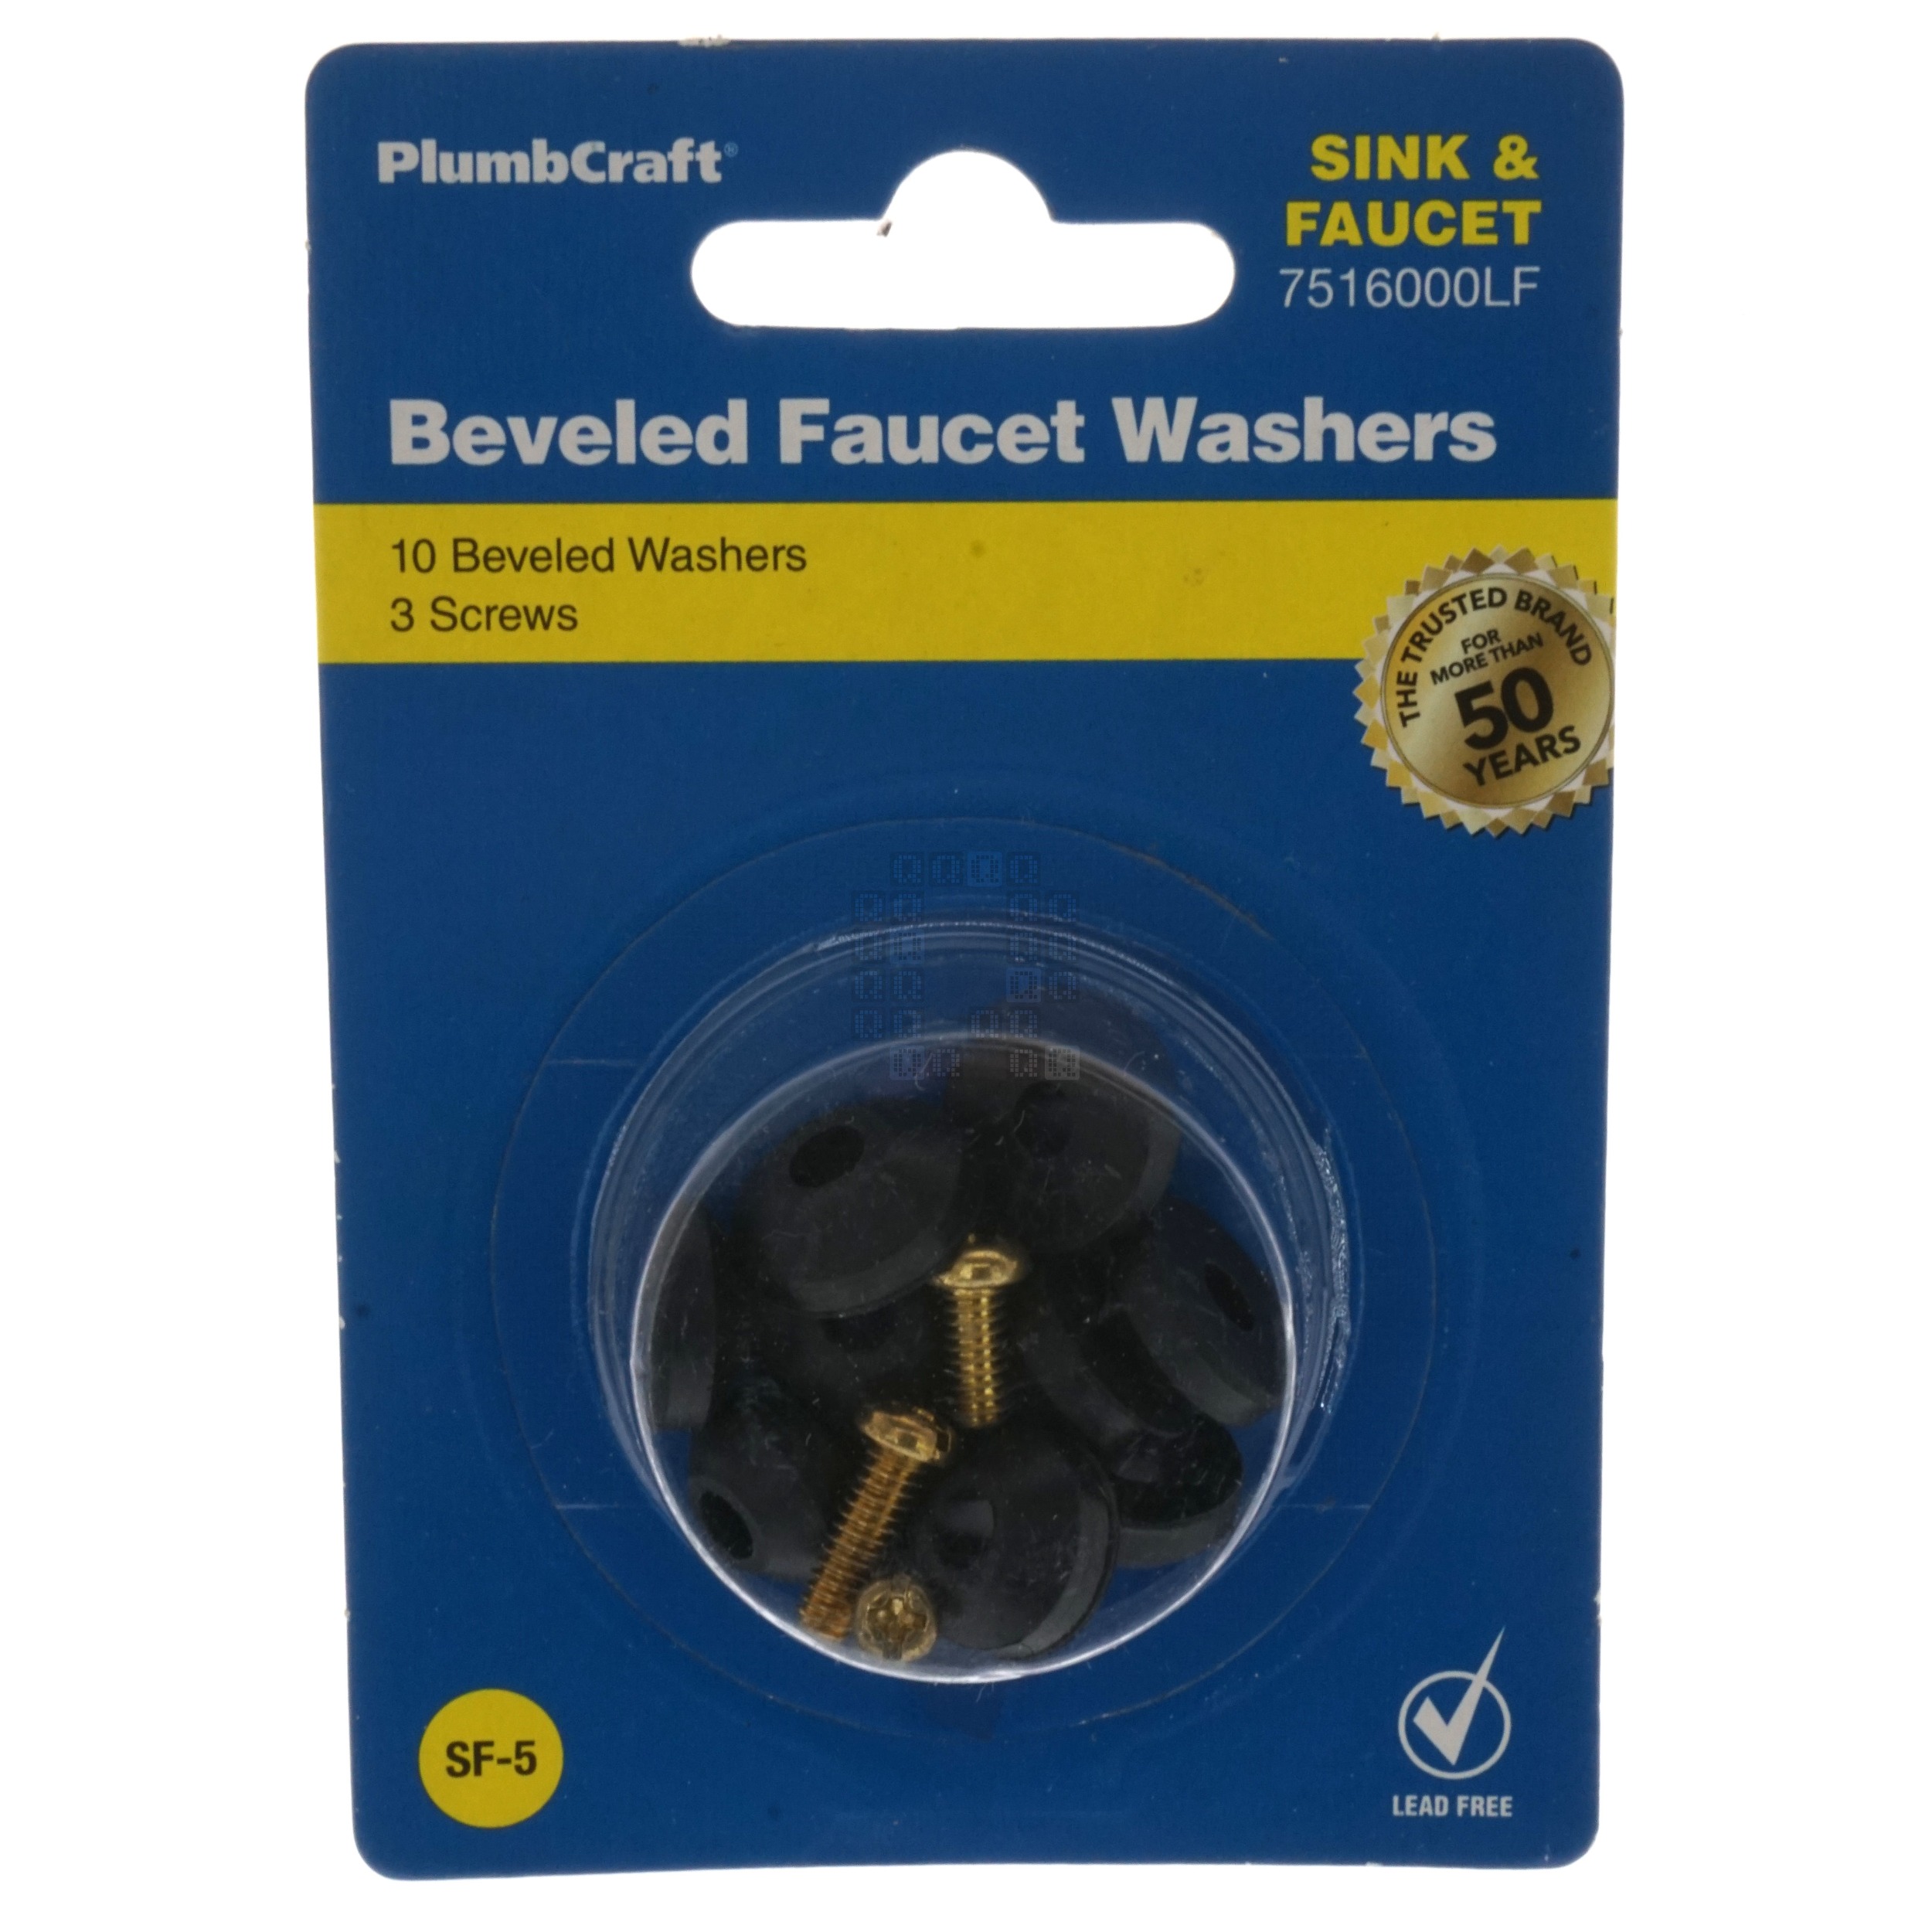 PlumbCraft 7516000LF Beveled Faucet Washer Kit, 10 Washers & 3 Screws